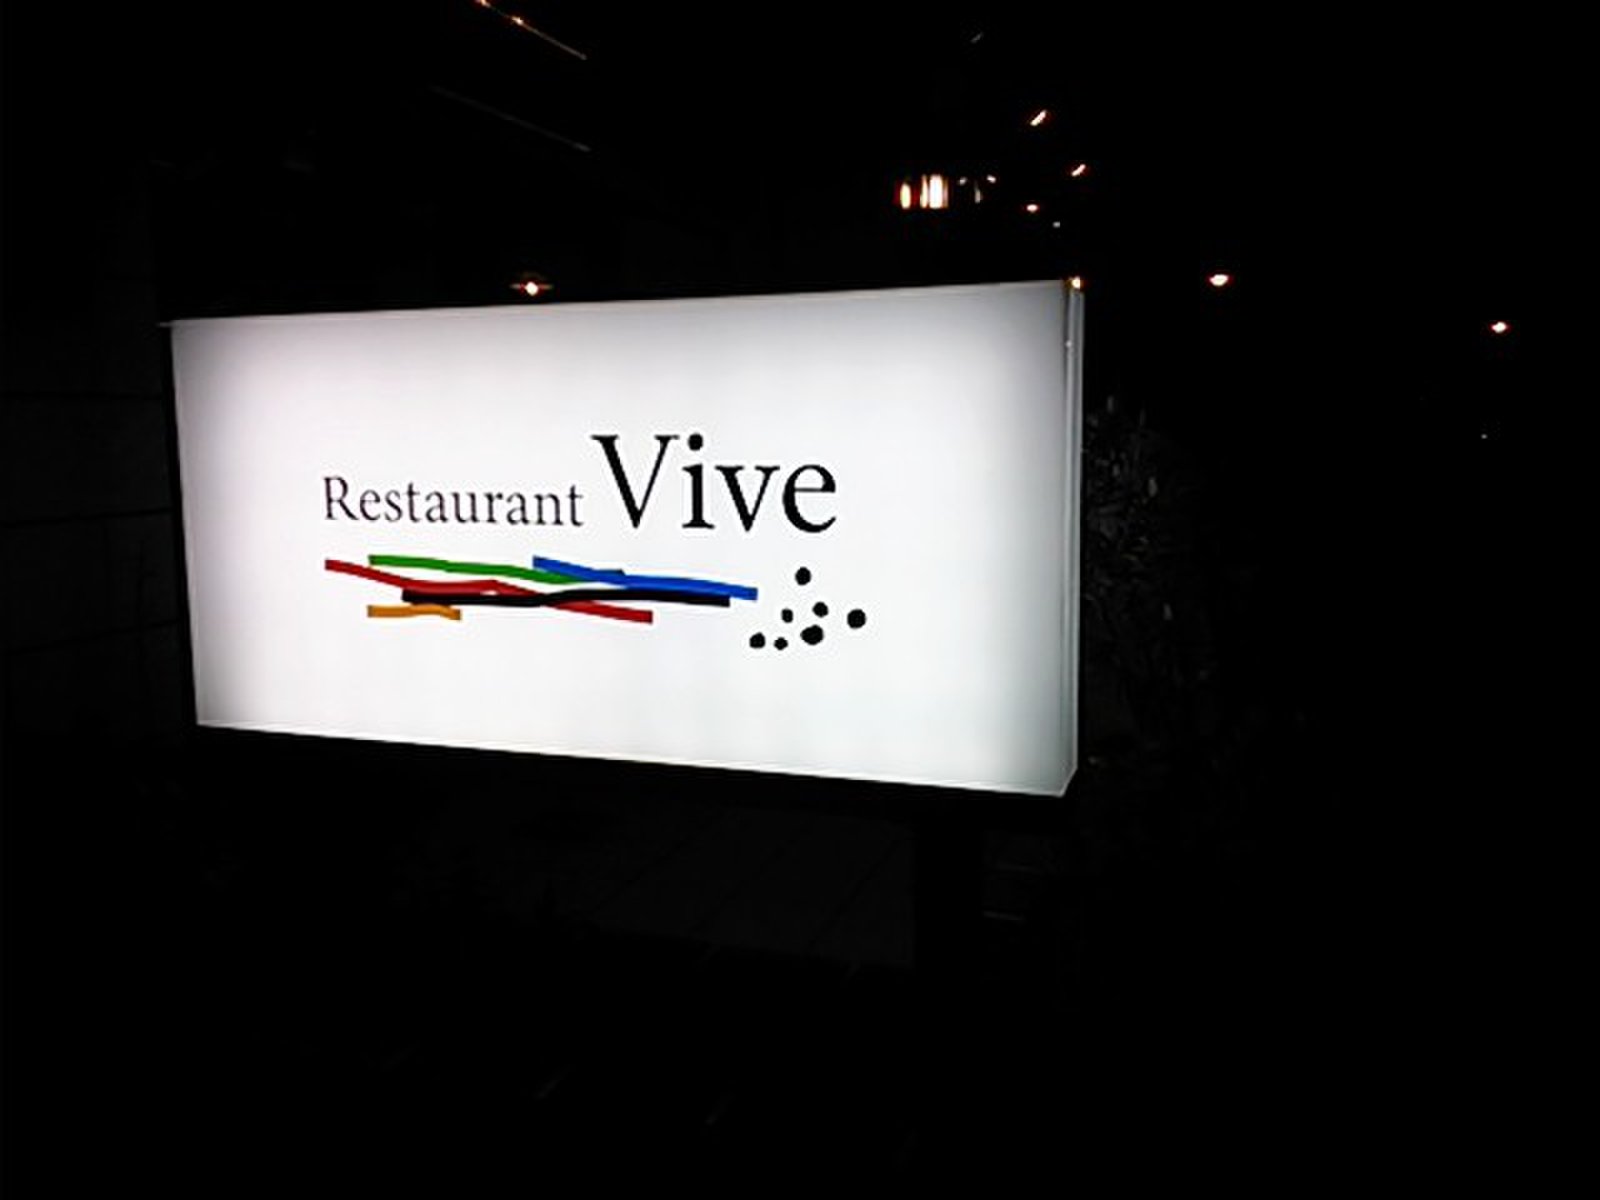 Restaurant Vive